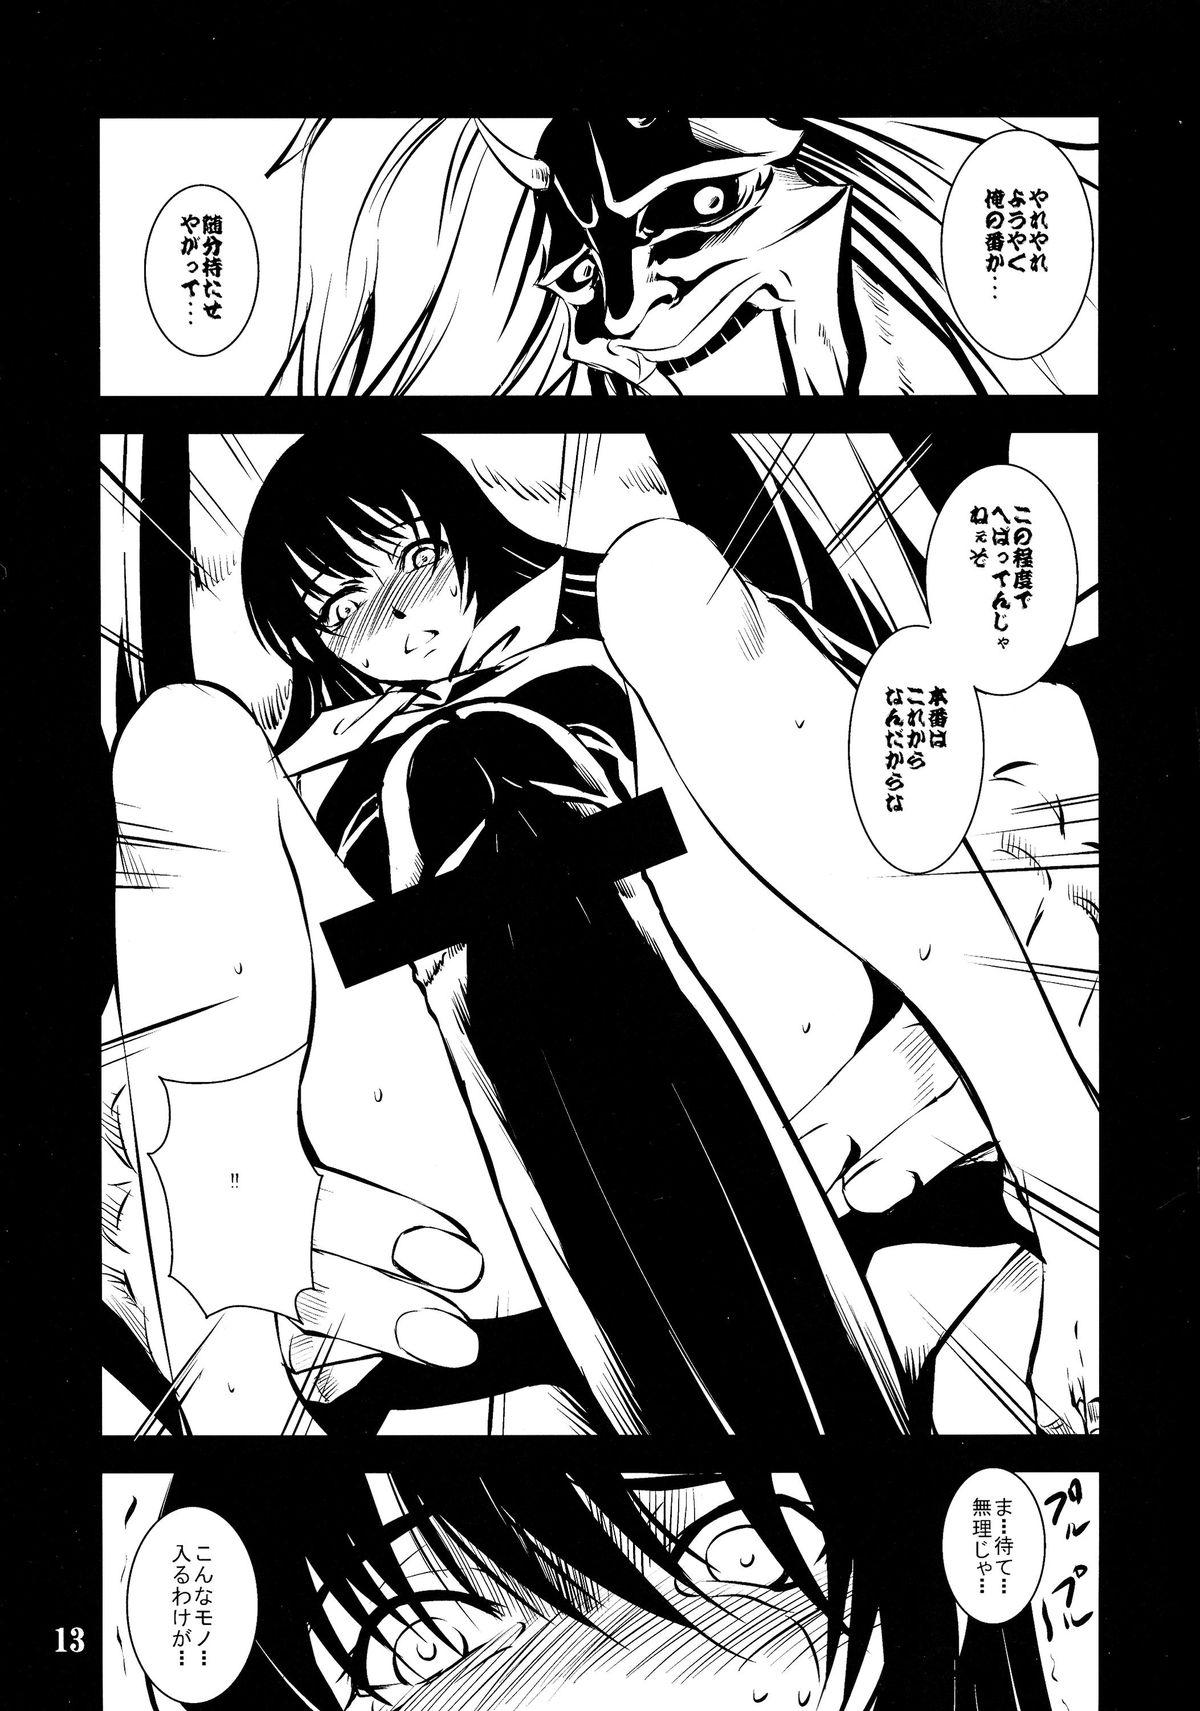 Trap Utakata no Yume - Nurarihyon no mago Perrito - Page 12